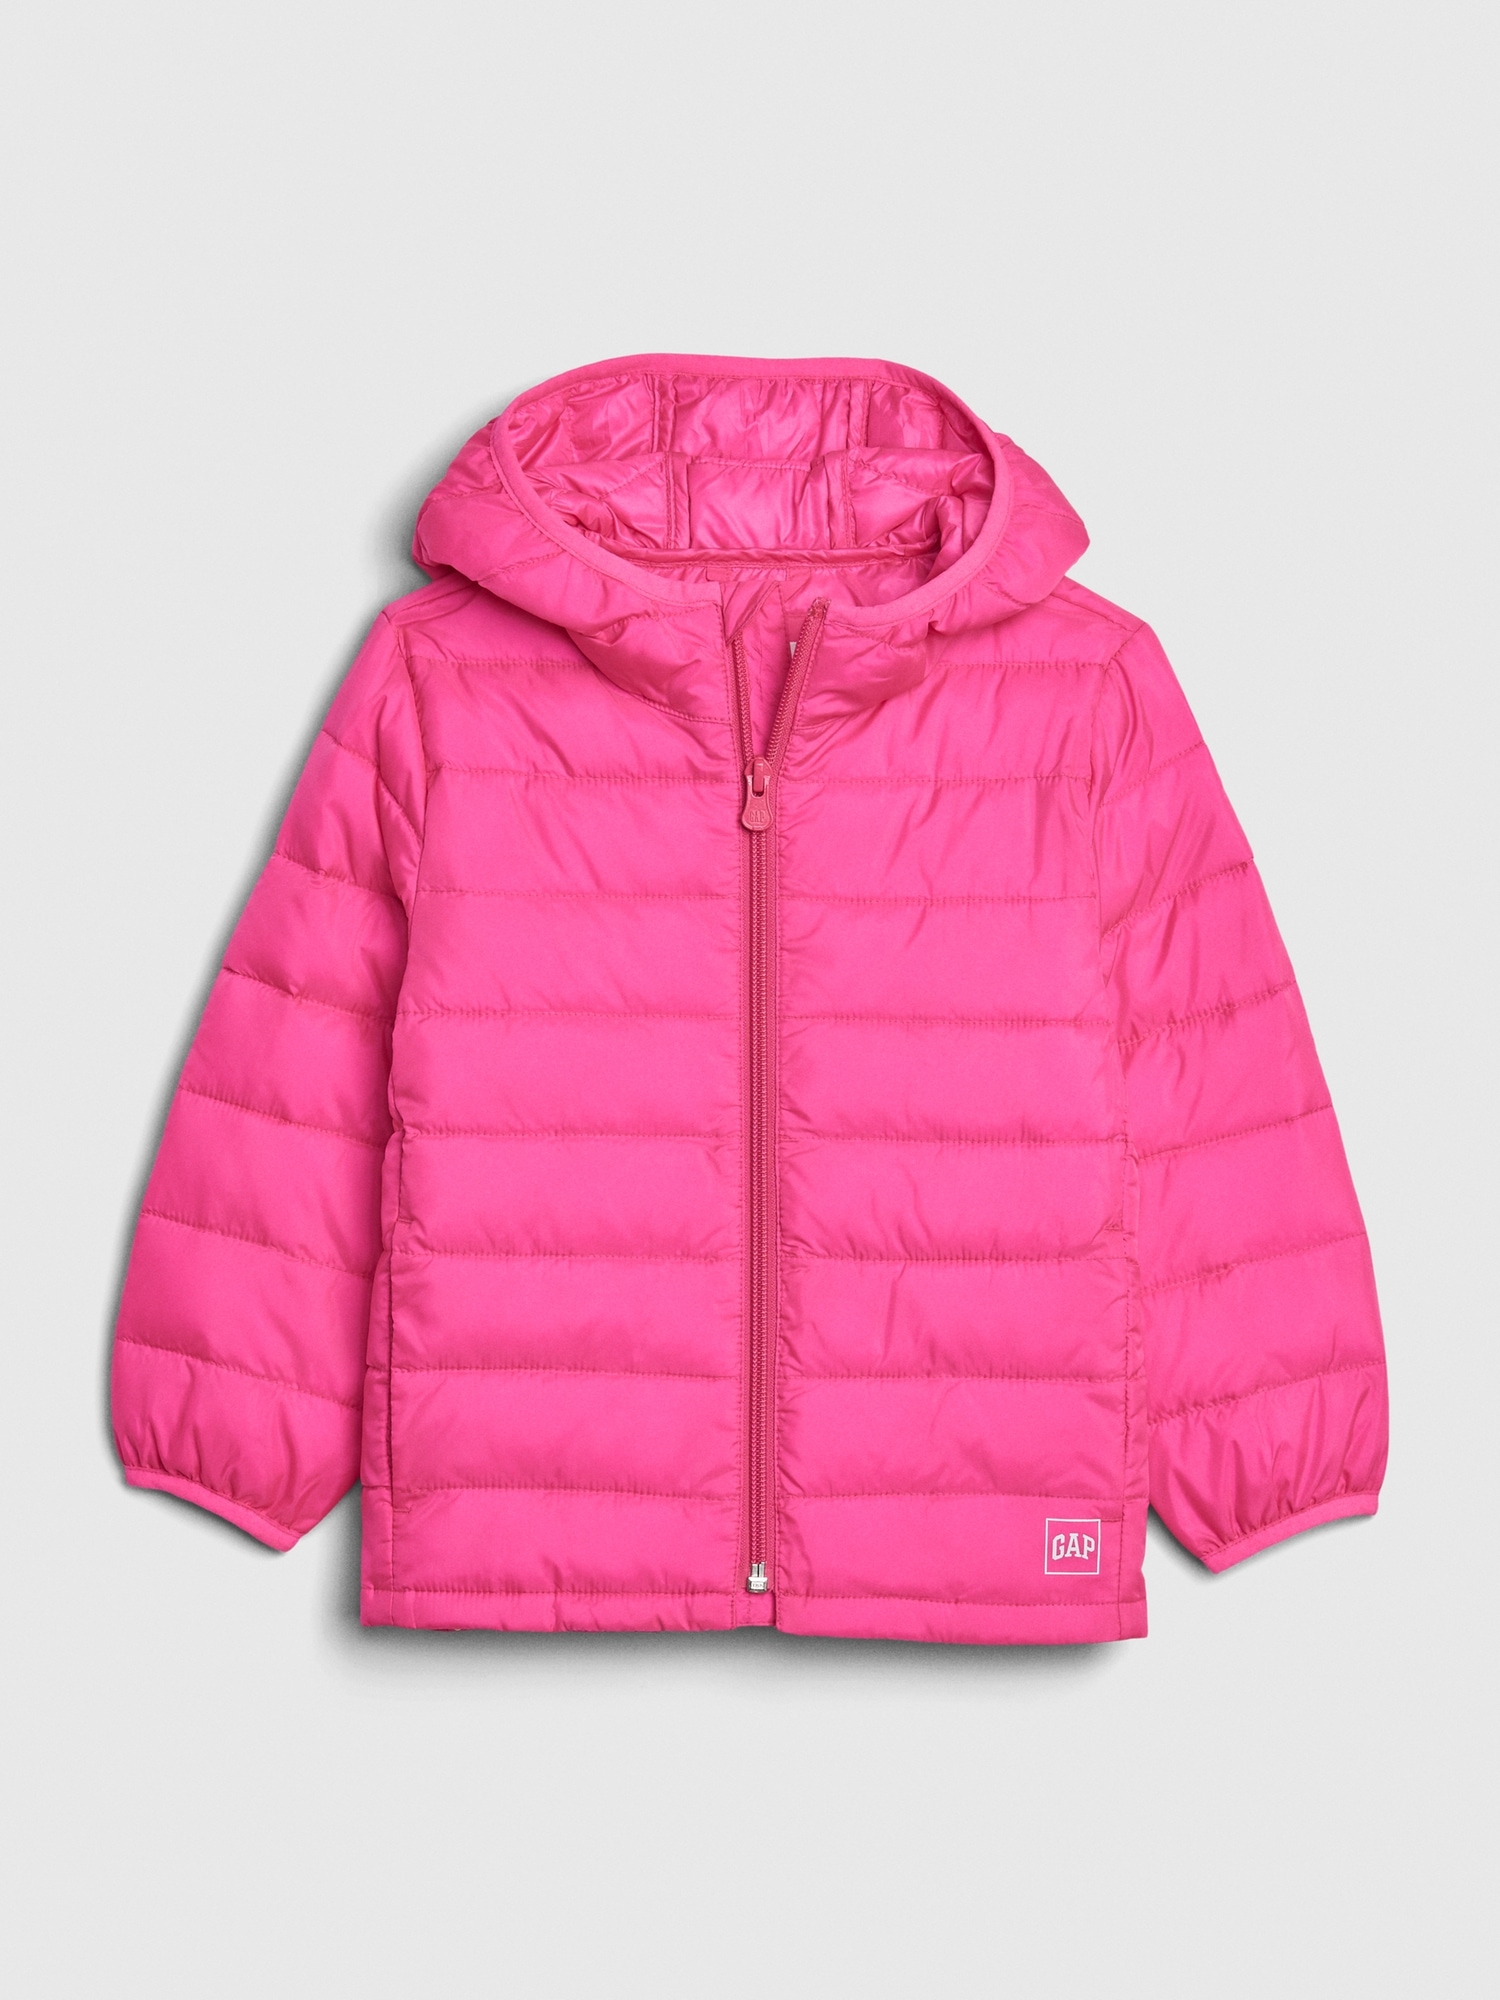 gap pink puffer jacket